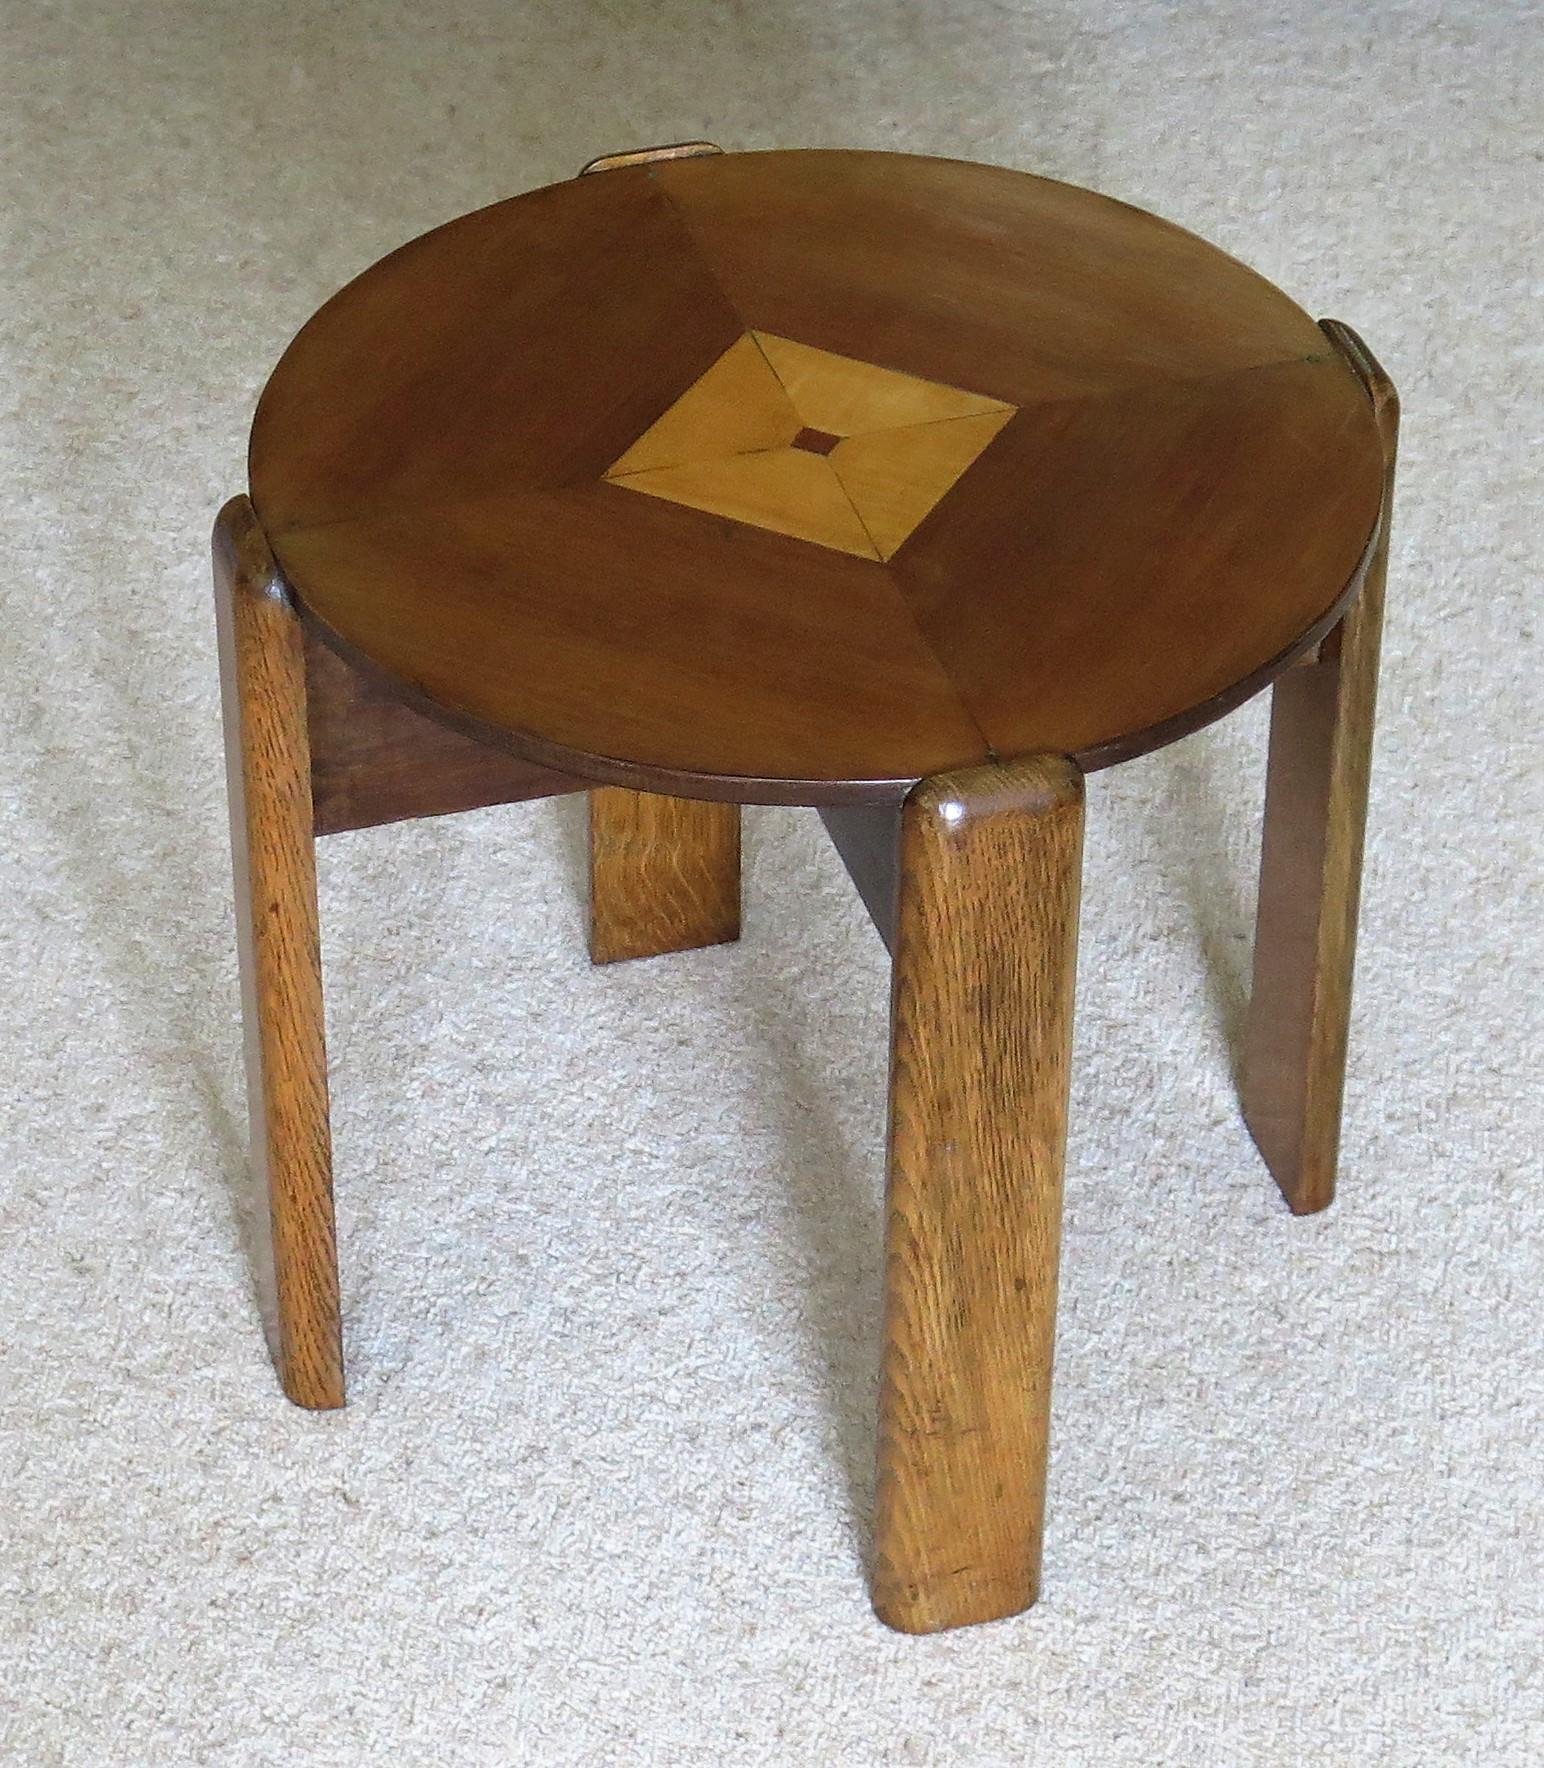 Il s'agit d'une table d'appoint, d'extrémité ou d'appoint très décorative, fabriquée à partir de différents bois durs dans un design géométrique typique et datant de la période Art déco, vers 1930.

La table a un plateau circulaire reposant sur un